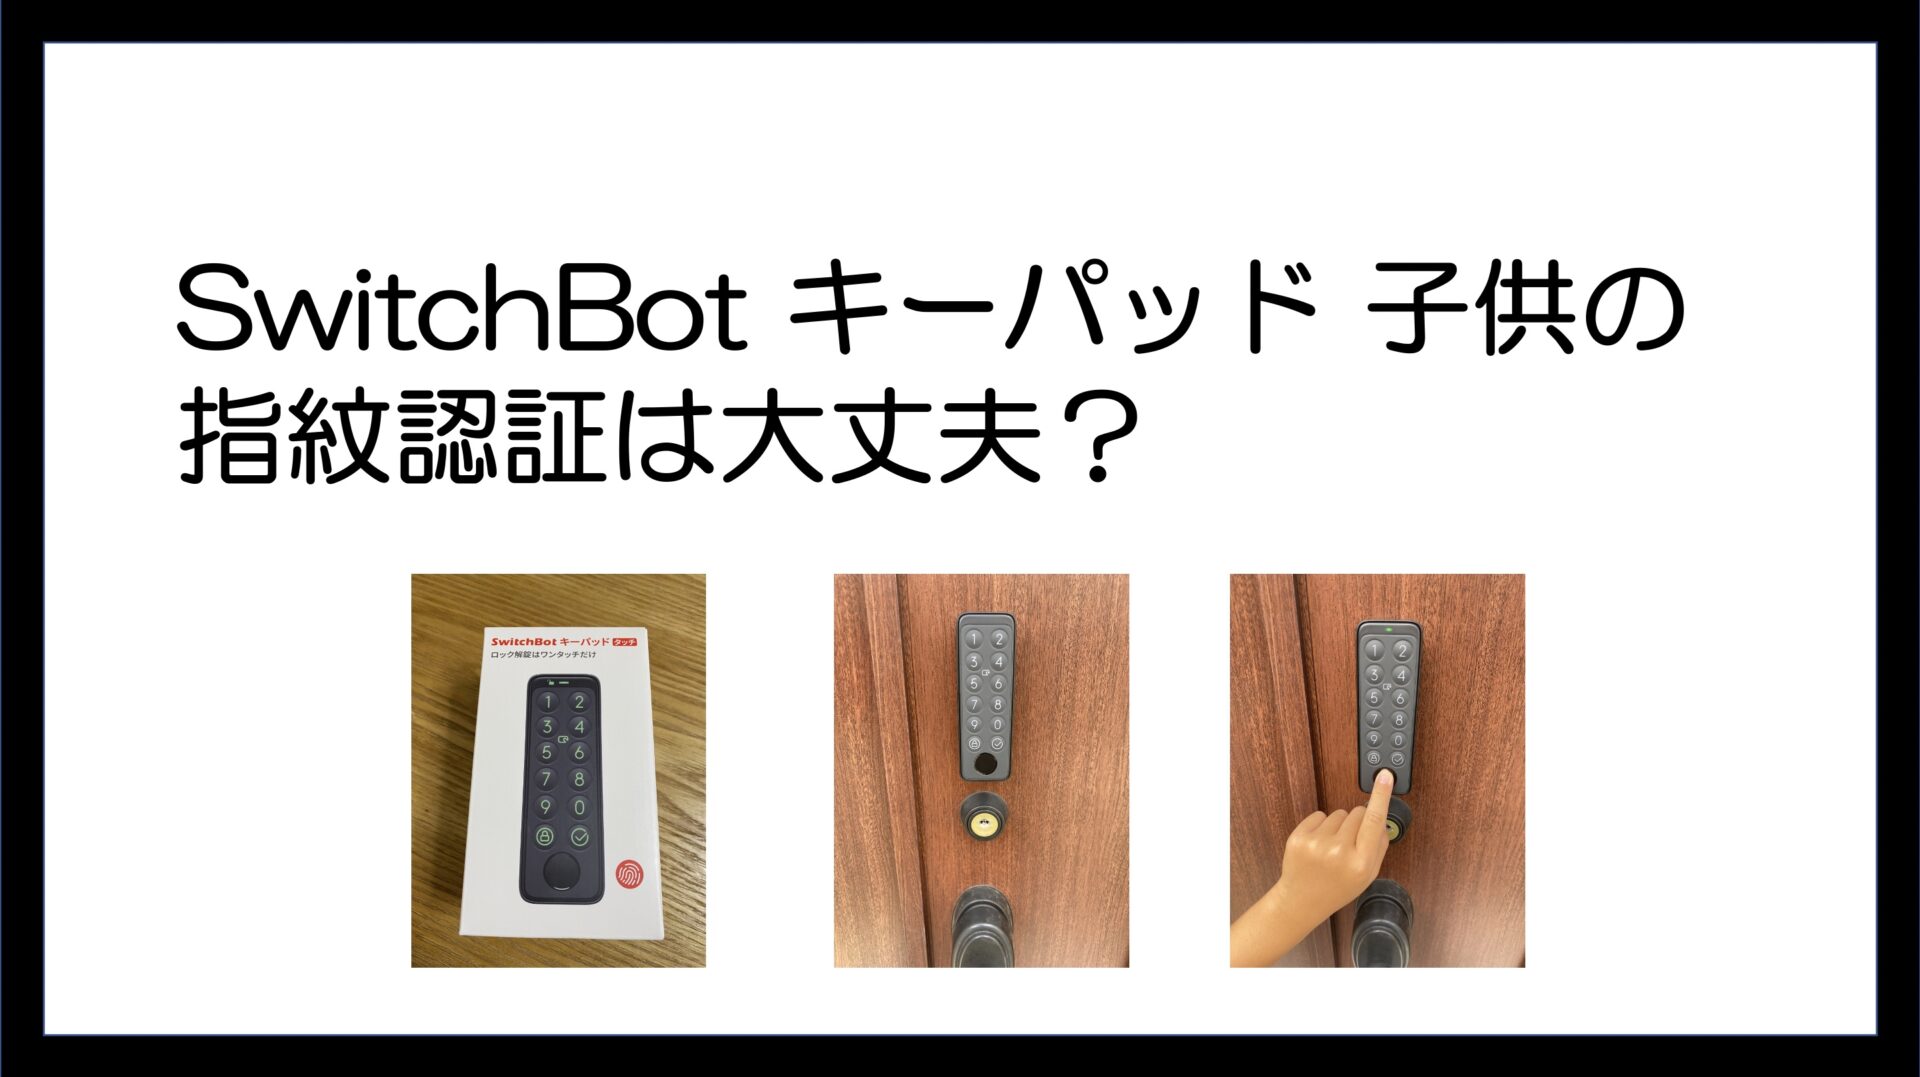 スイッチボット switchbot スマートロック スマートキー 指紋認証